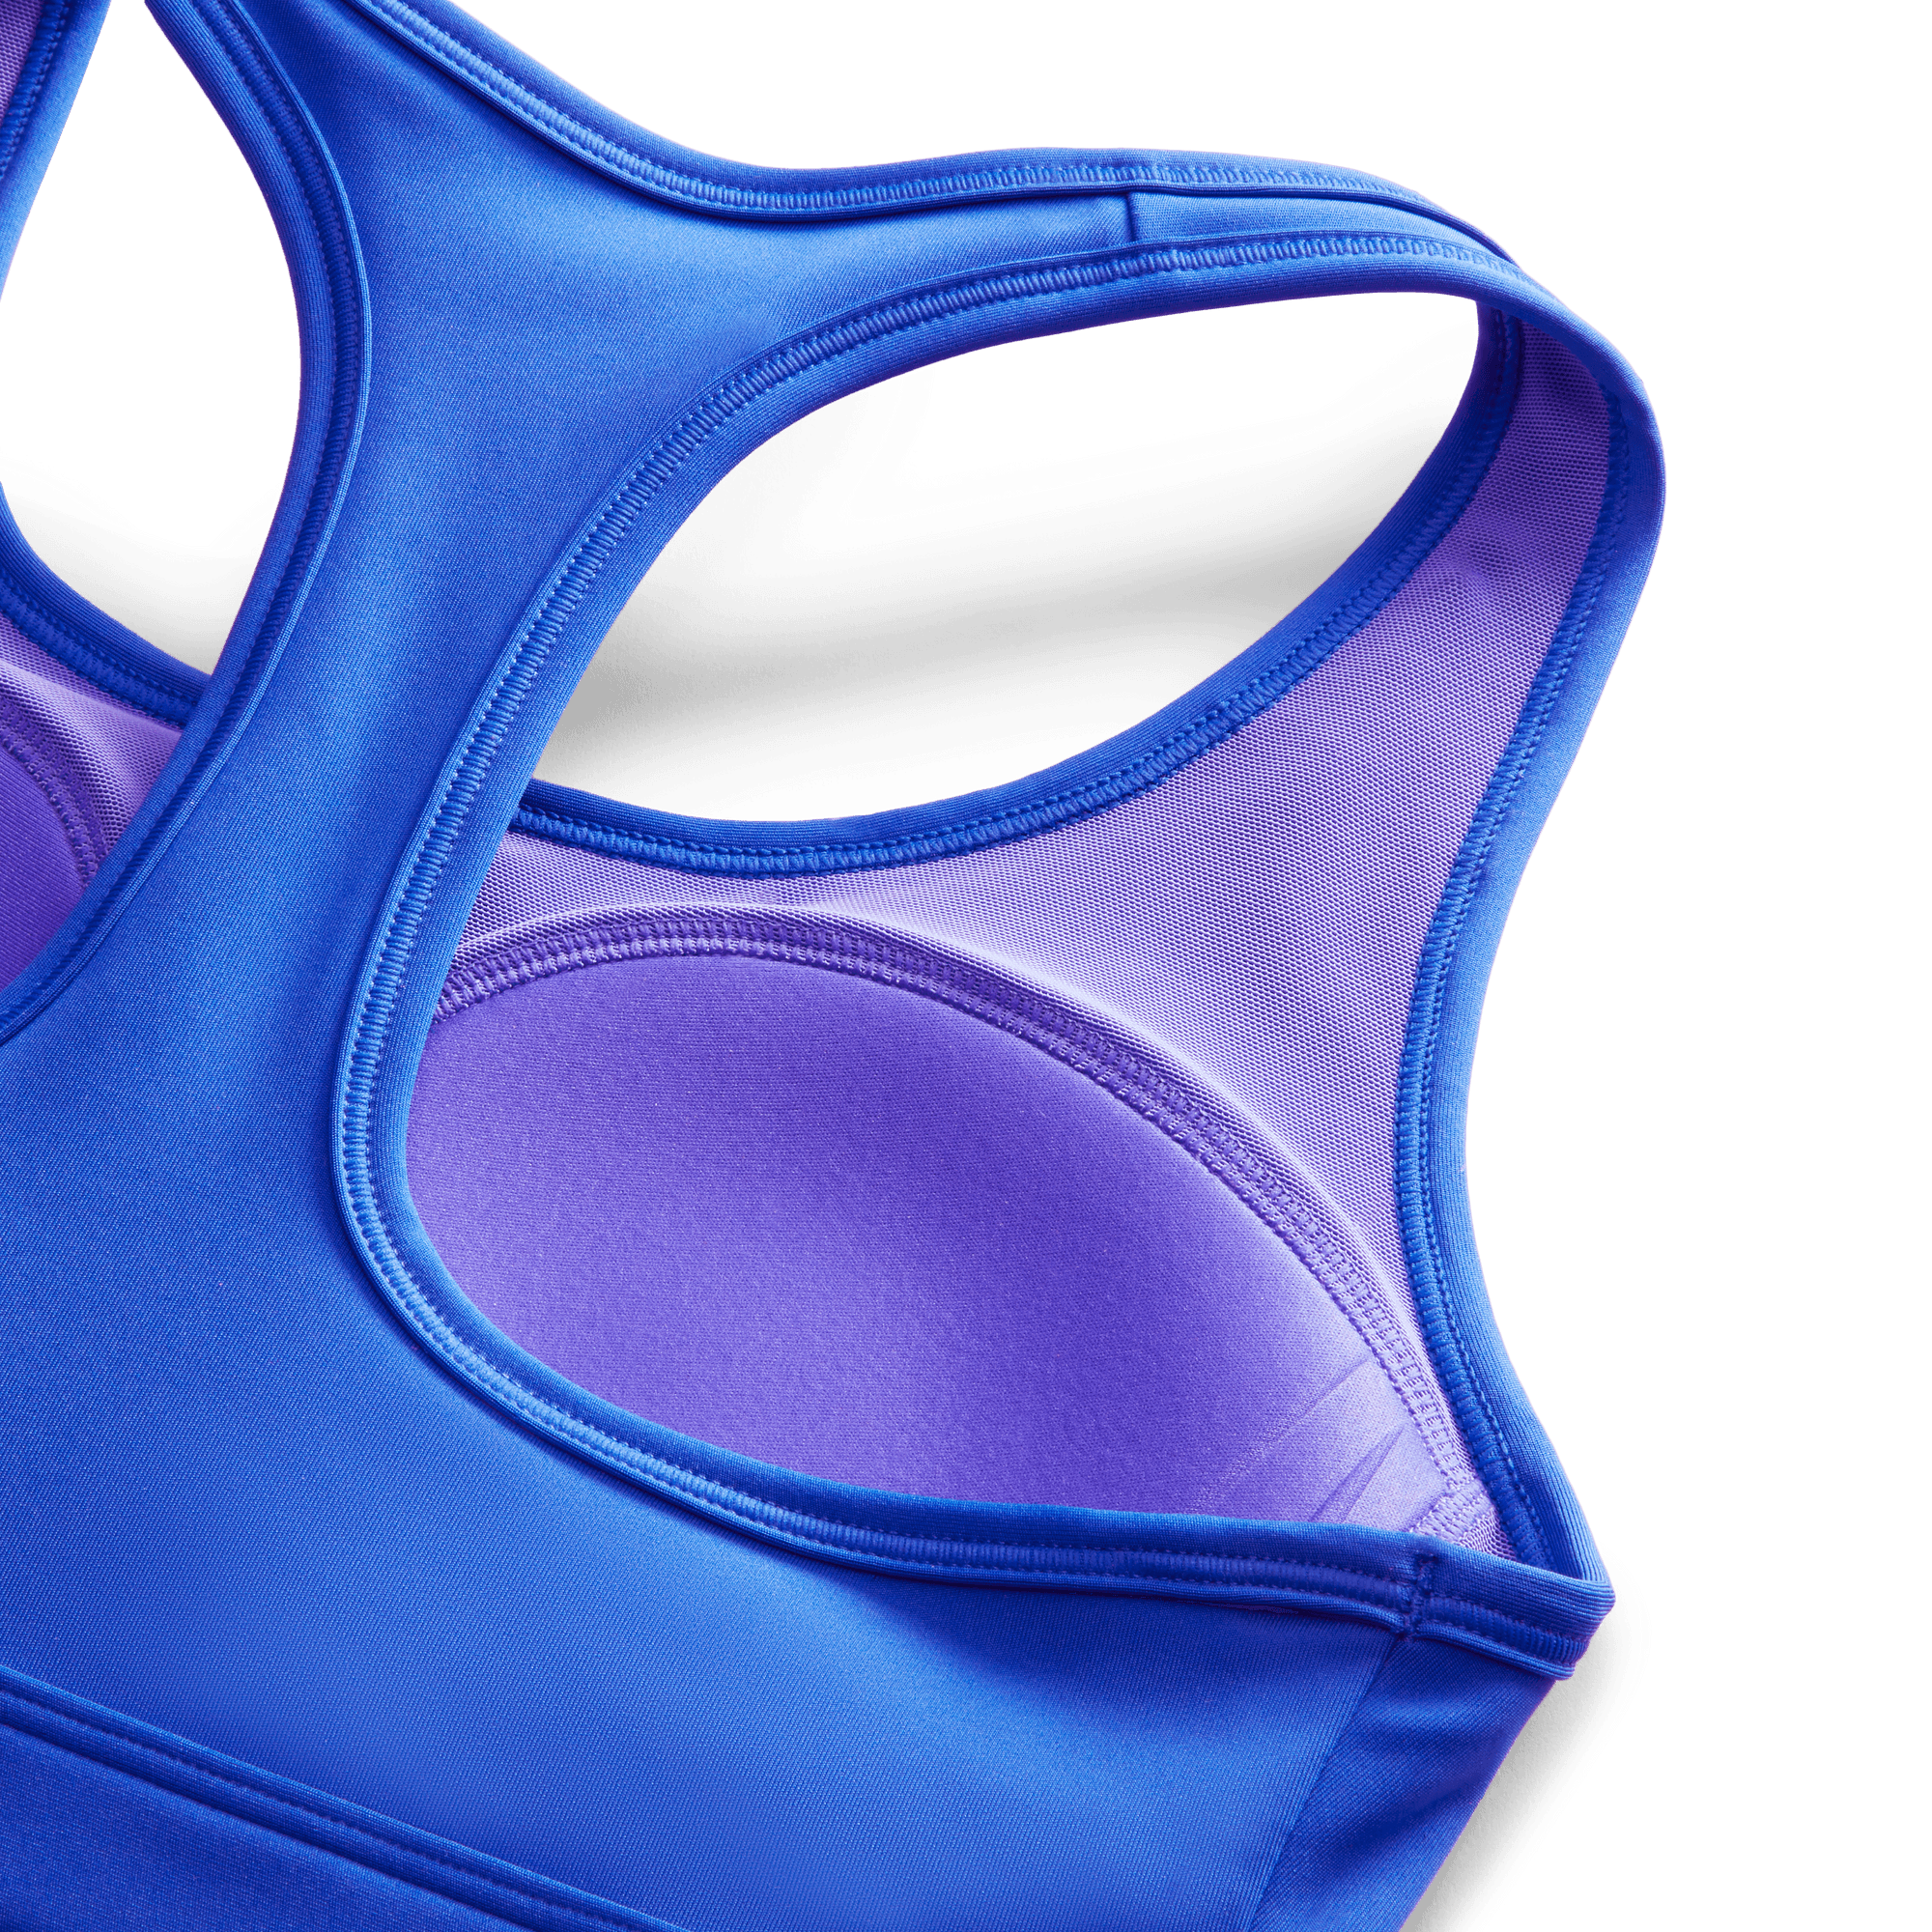 Nike Training Swoosh Dri-FIT medium support bra in blue tint